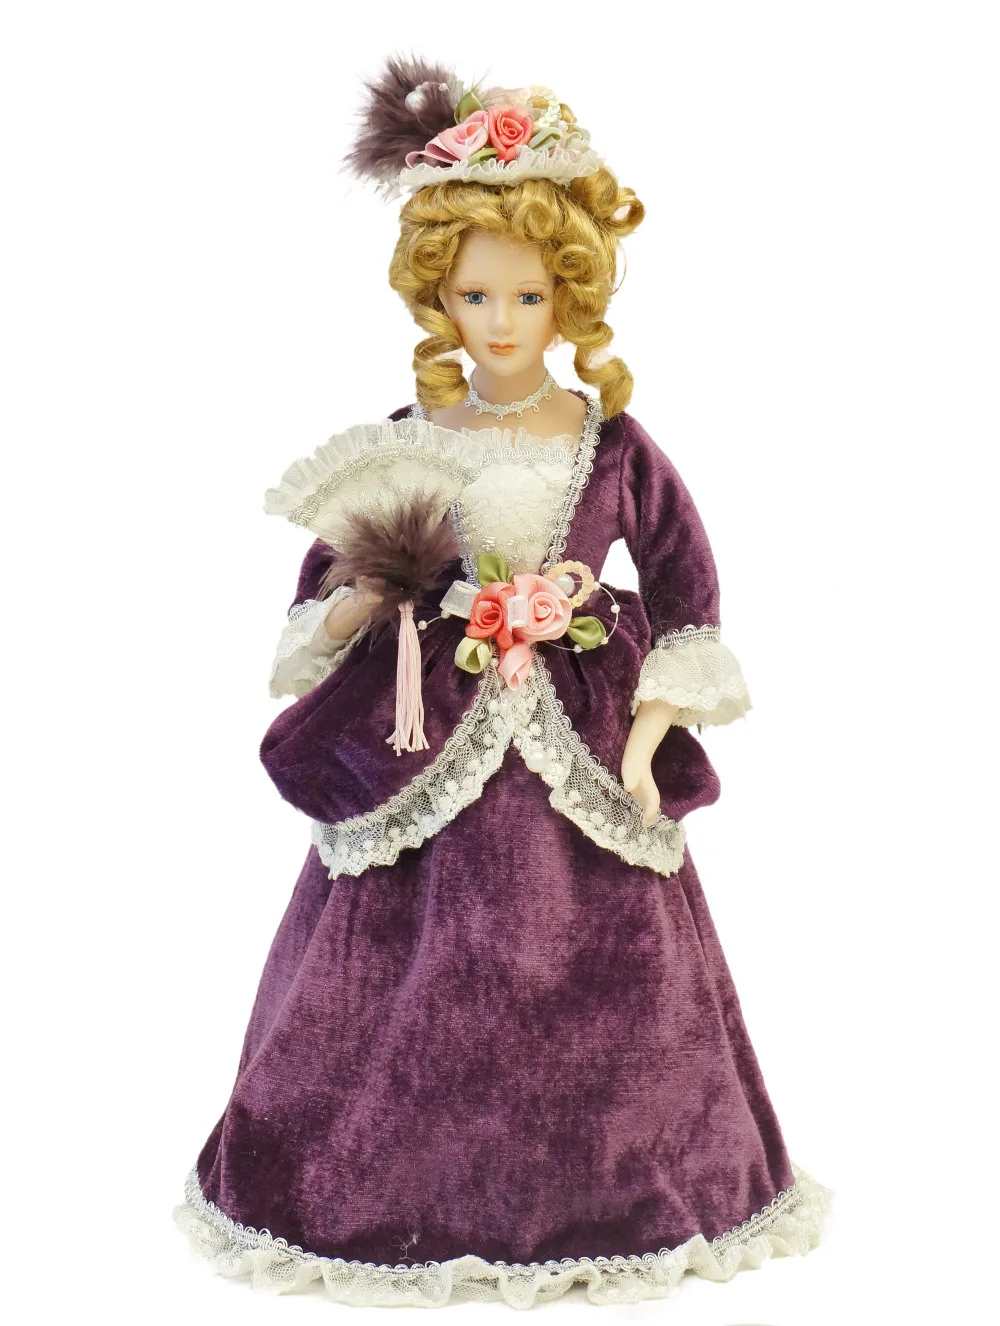 Козетта фарфор классическая кукла леди Винтаж 14 дюймов.(около 35 см) украшение дома рождественские подарки фигура